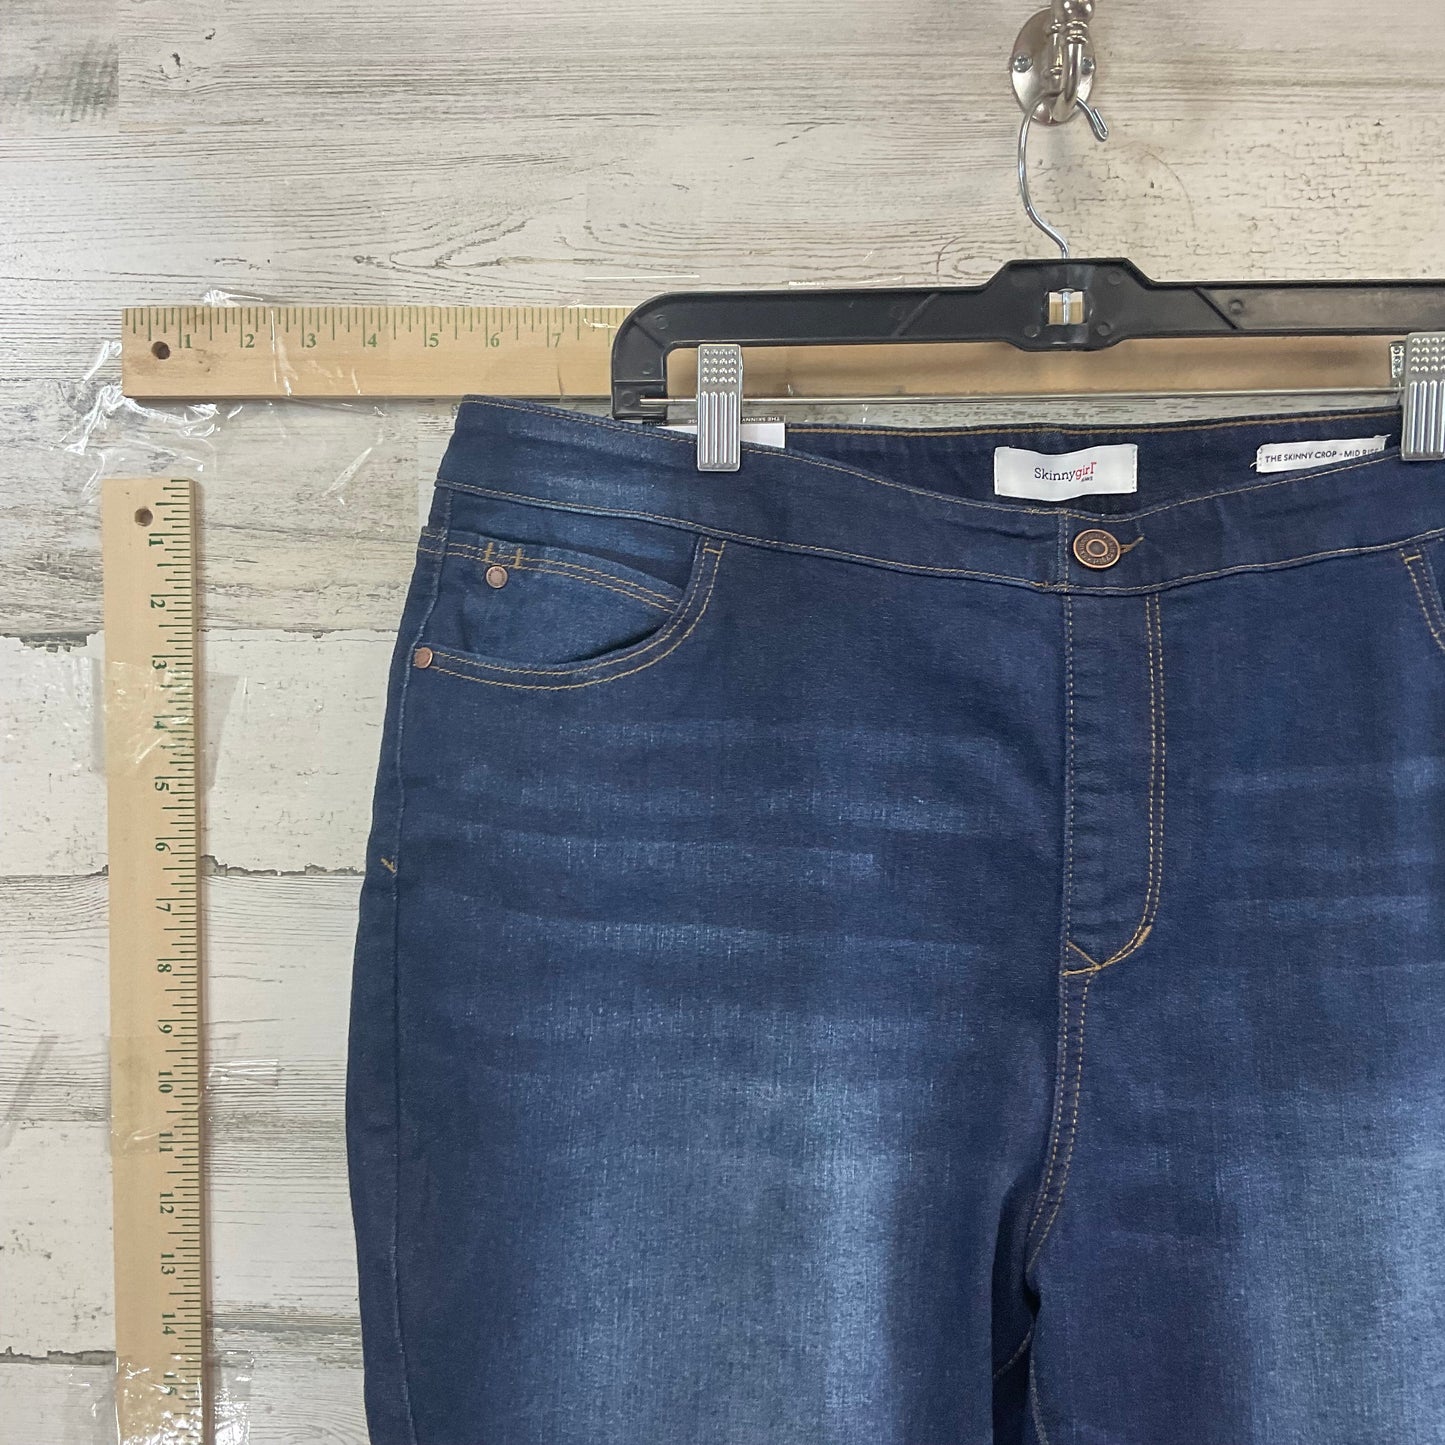 Blue Denim Jeans Cropped SKINNY GIRL, Size 20w